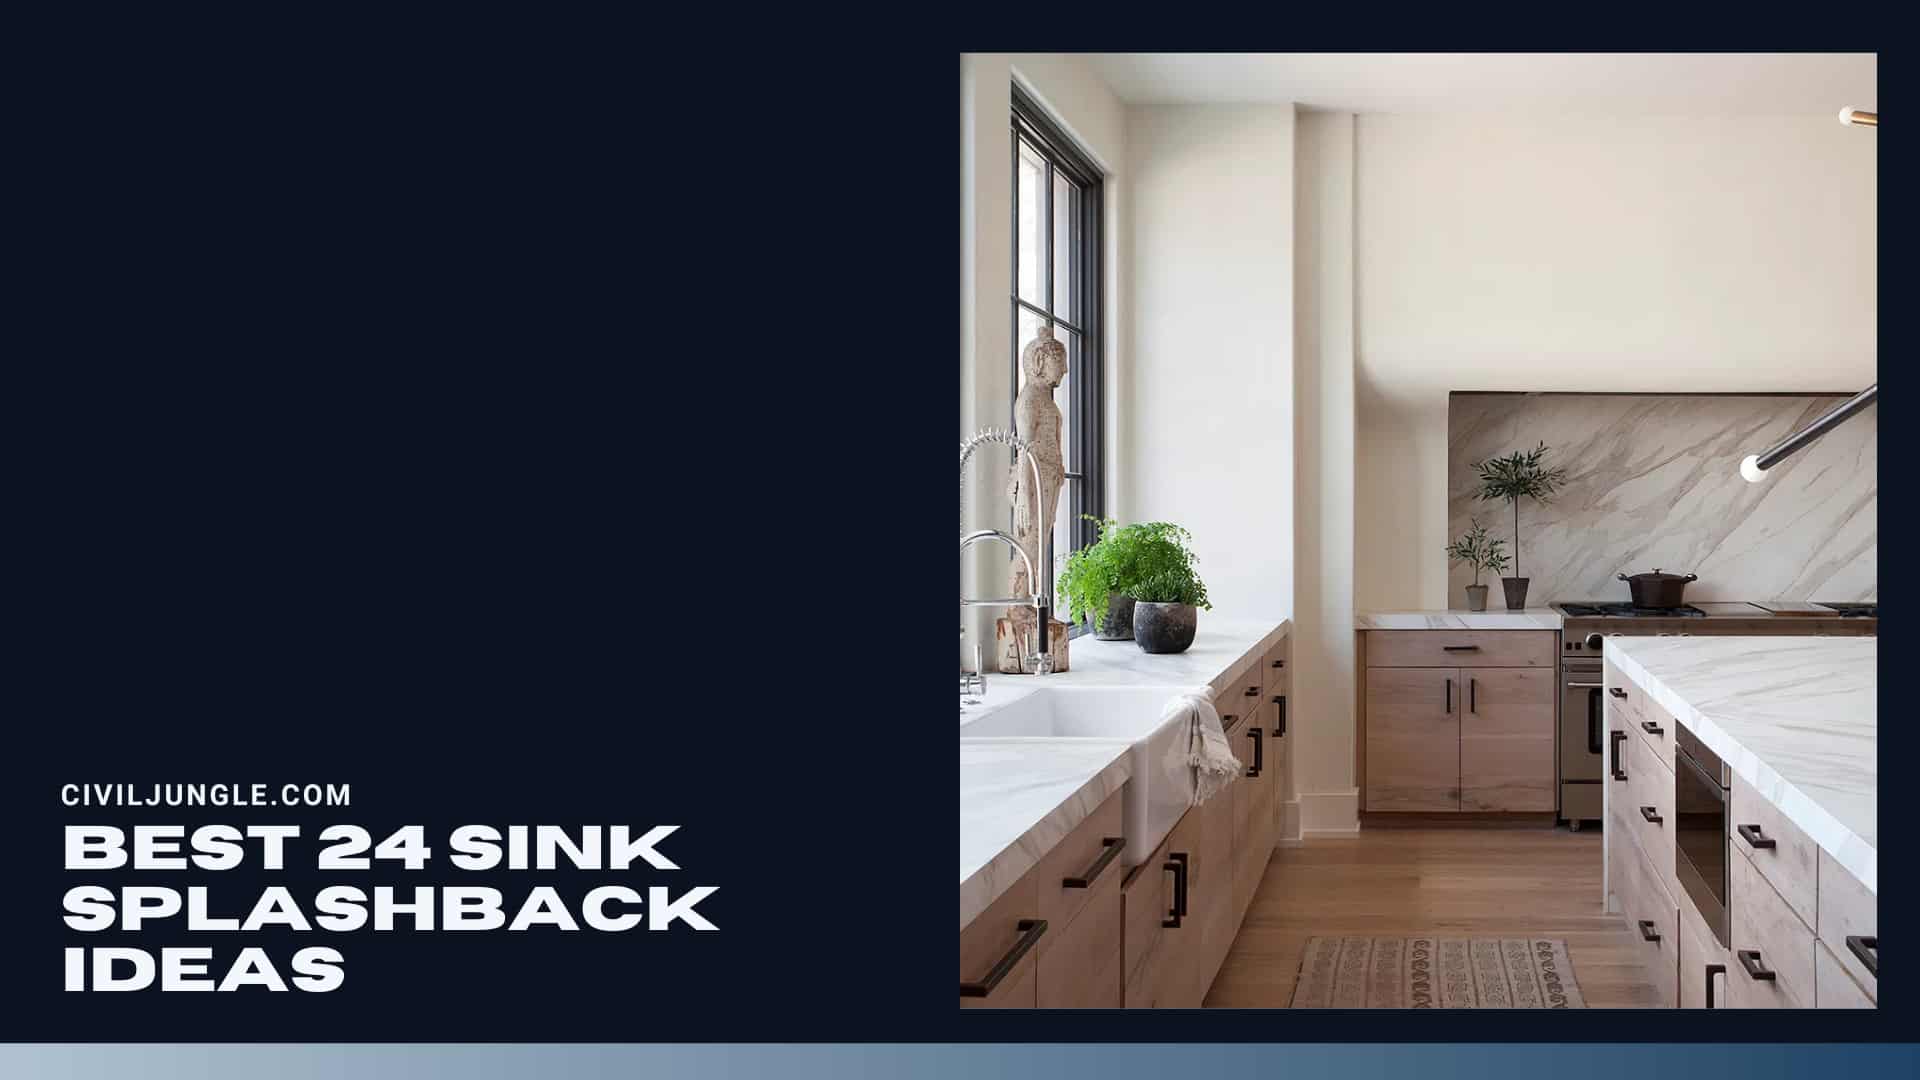 Best 24 Sink Splashback Ideas